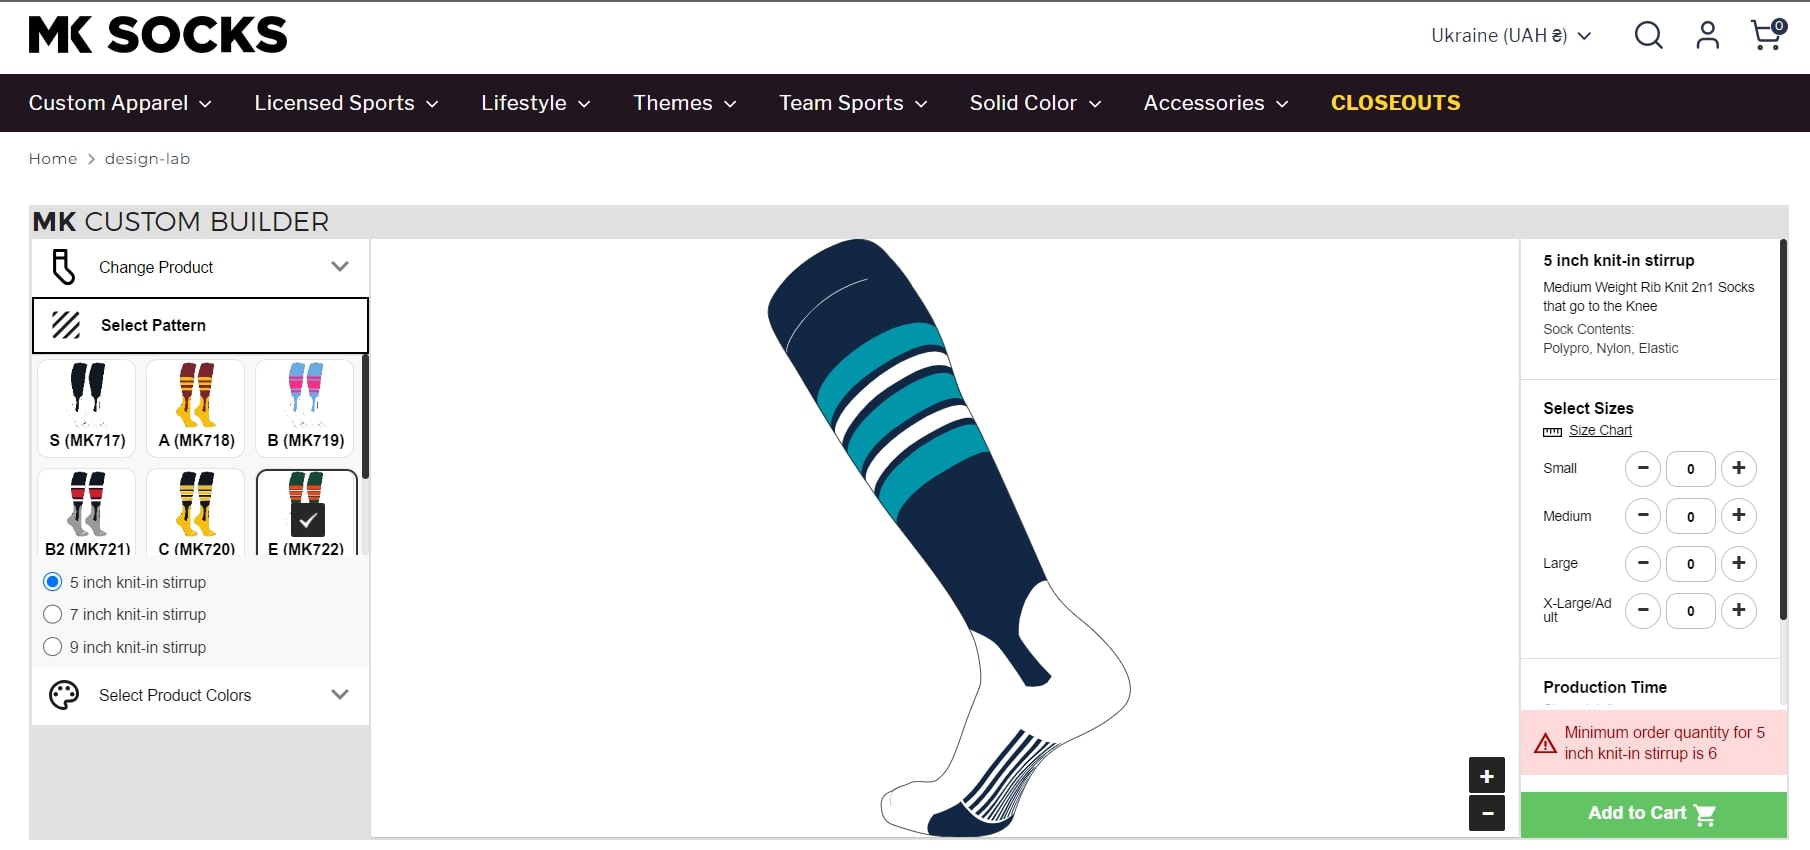 MK Socks Online Product Designer for Socks